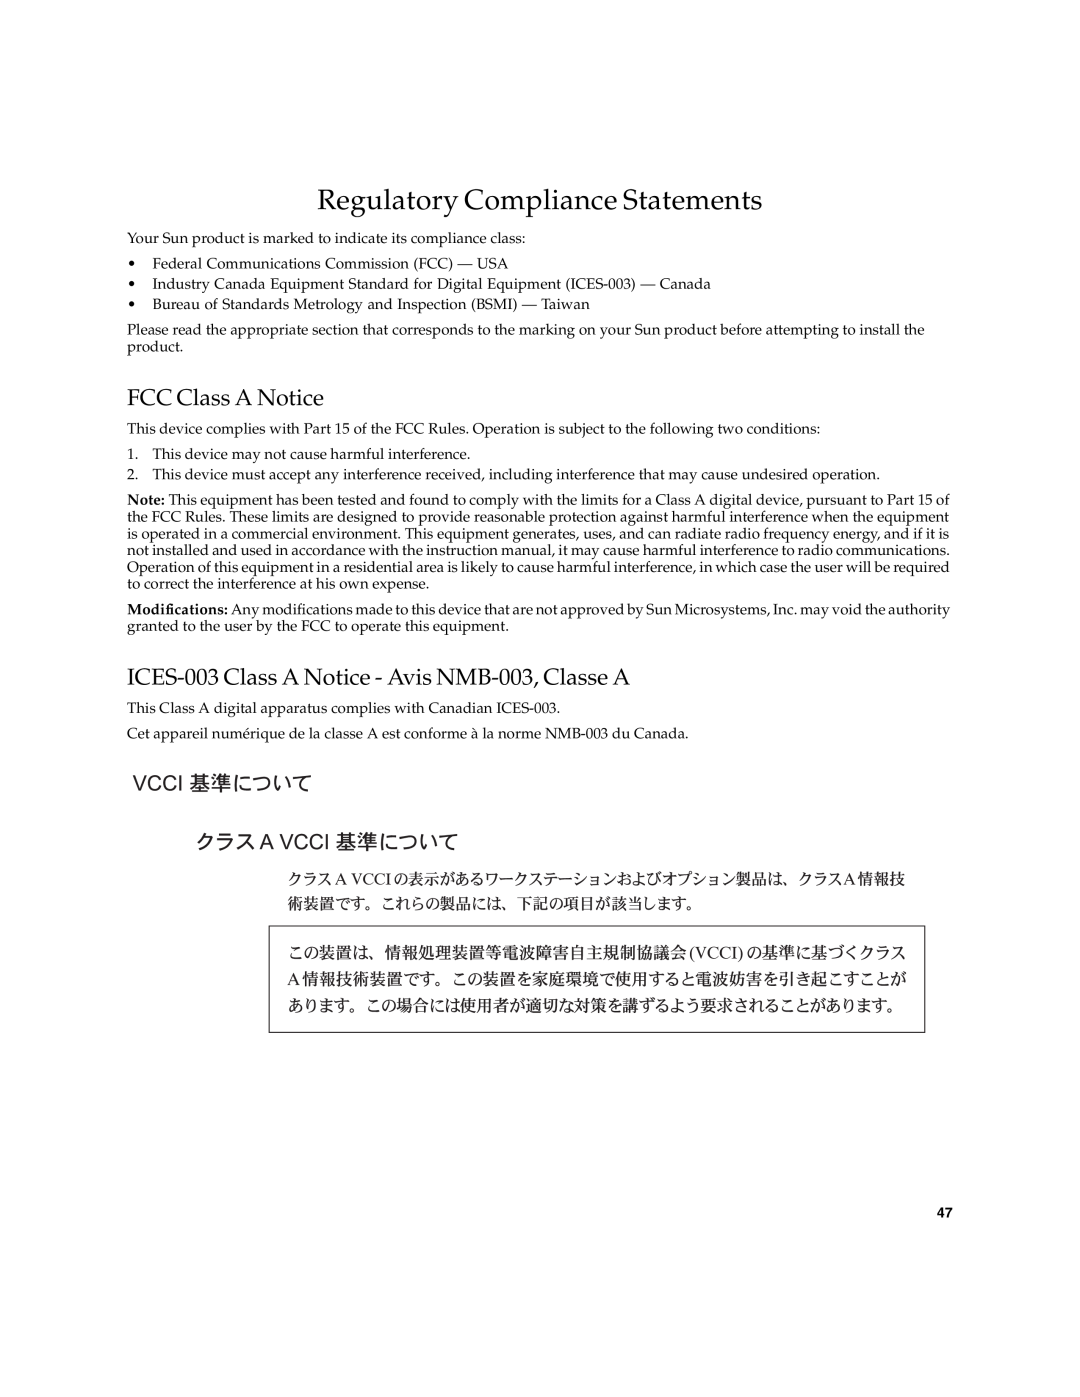 Sun Microsystems 2.0 manual Regulatory Compliance Statements, FCC Class A Notice 